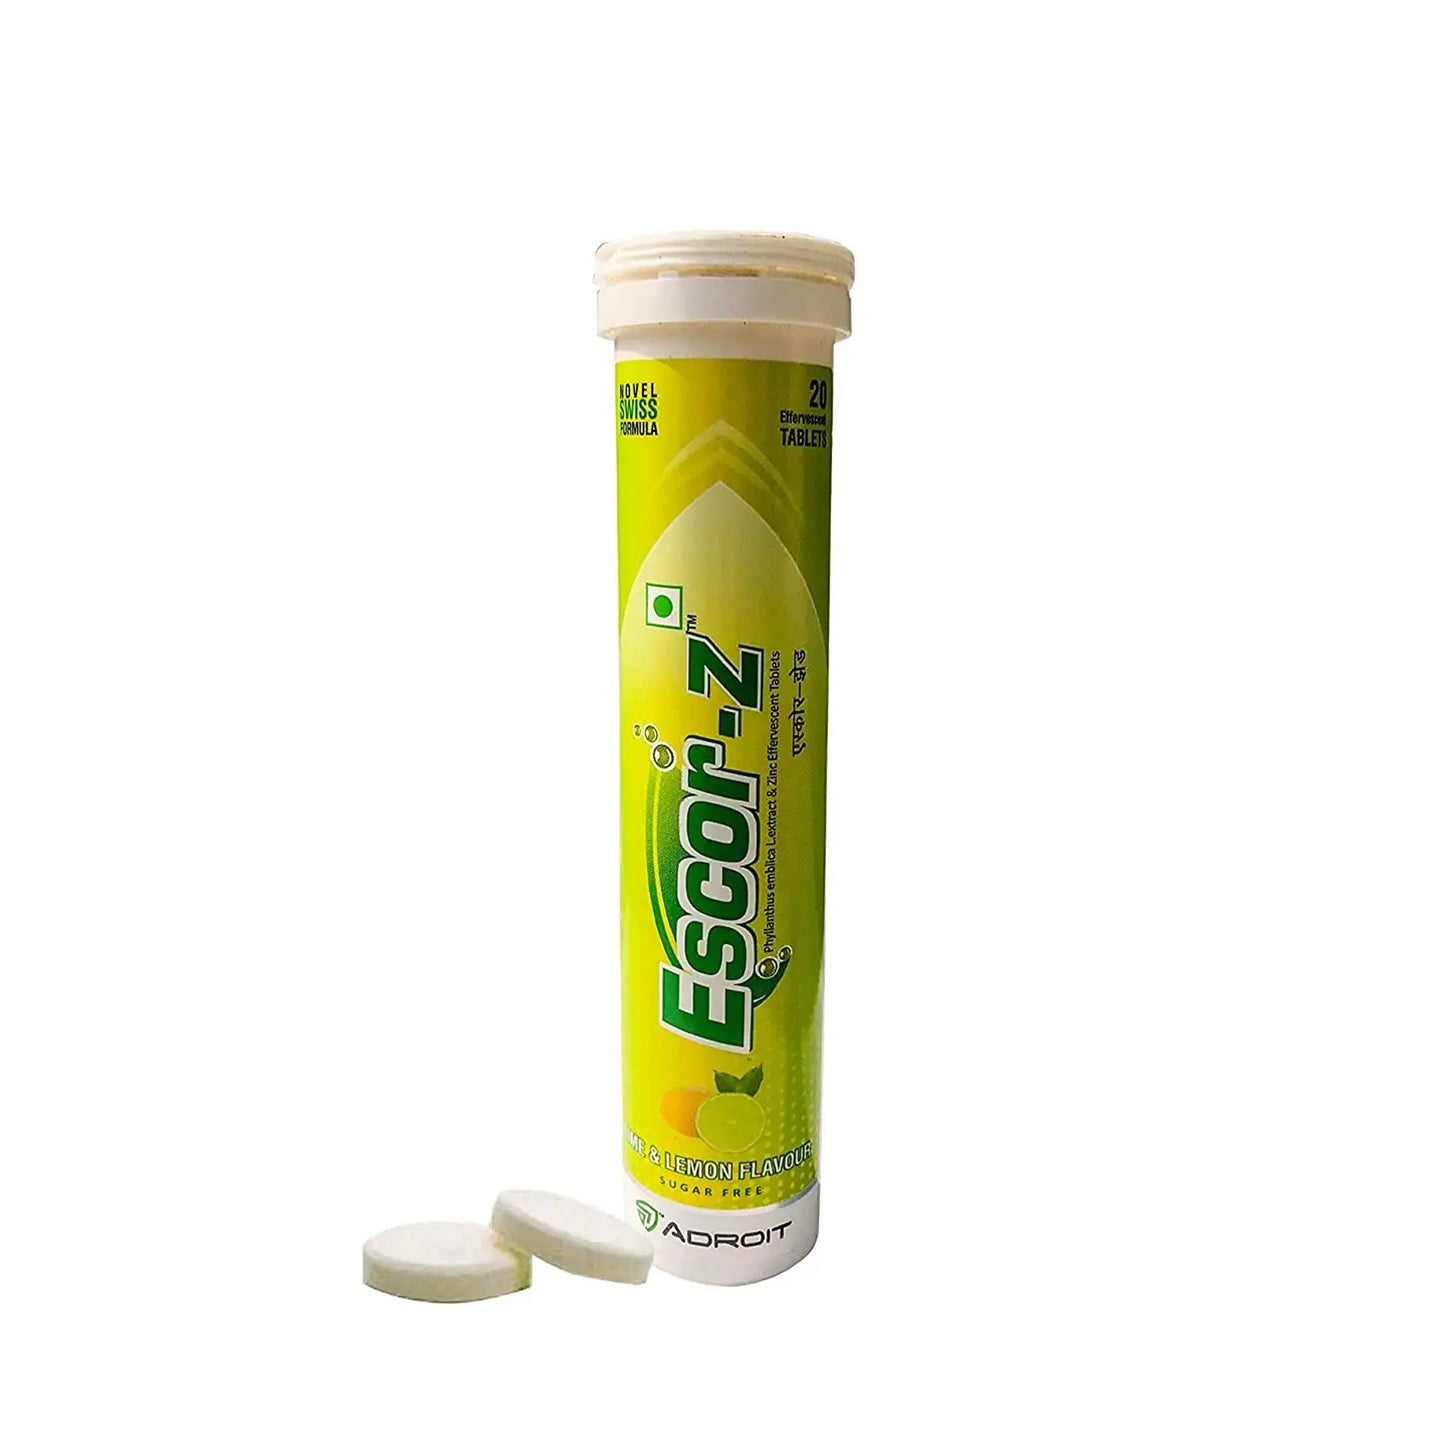 Escor-Z Effervescent Tablets - Lime and Lemon Flavour, 20s